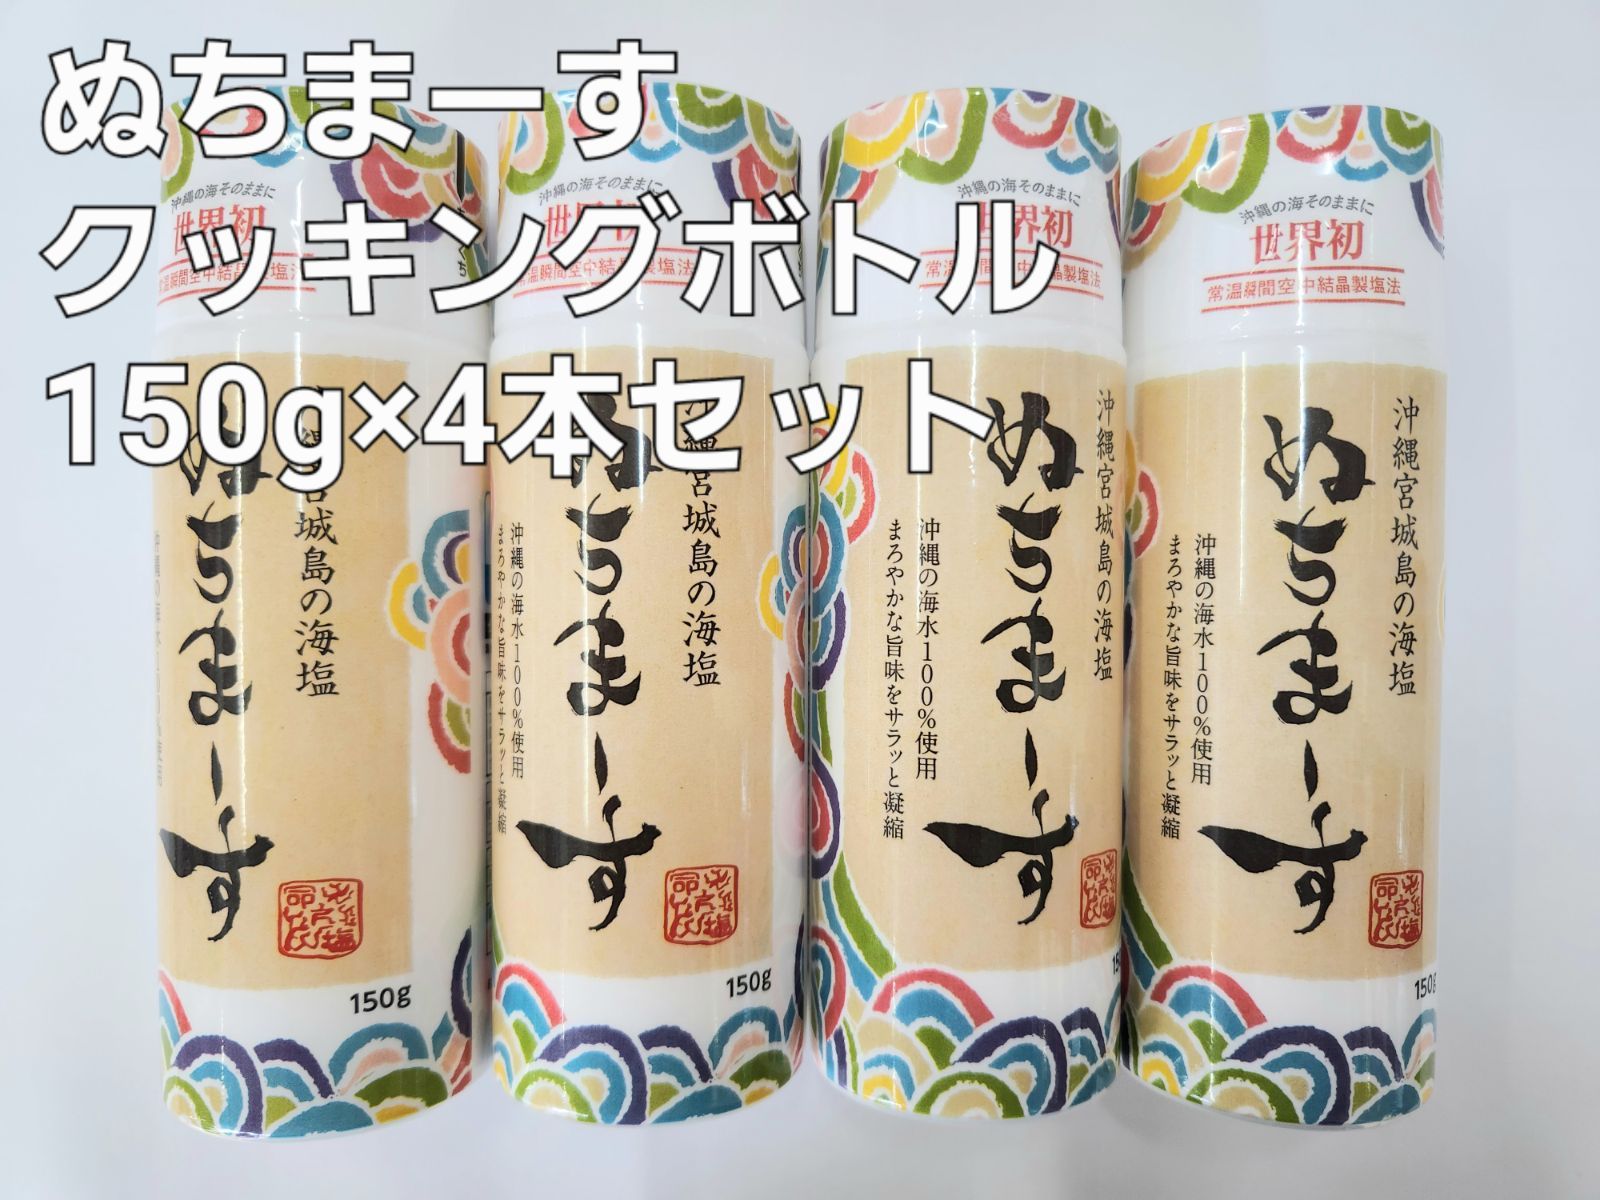 沖縄のミネラル海塩 ぬちまーす 111g×2袋とクッキングボトル150g